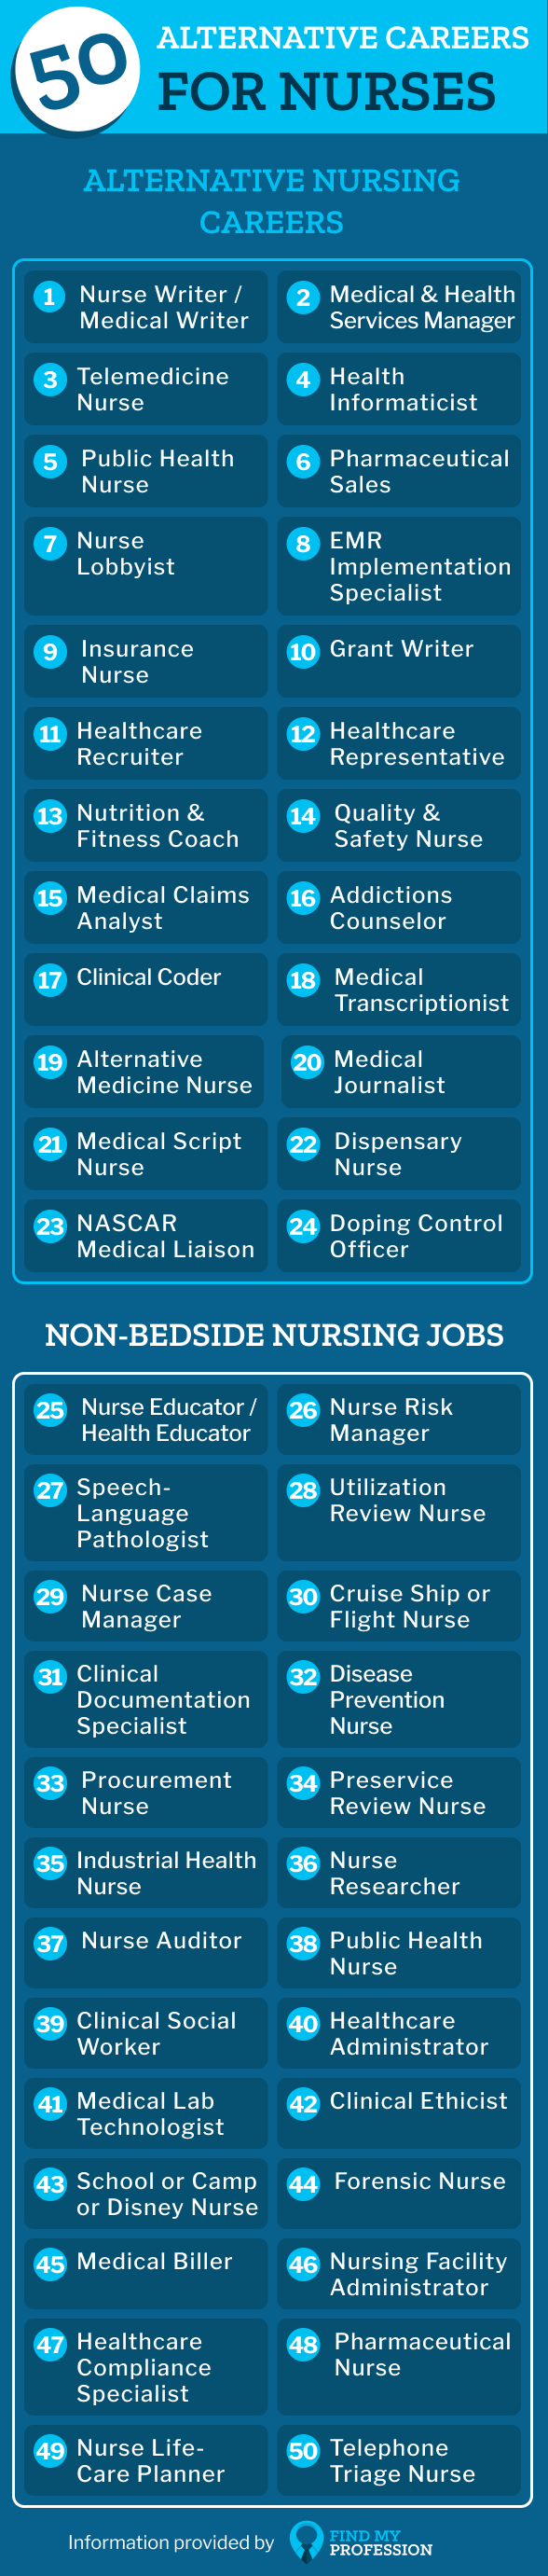 Alternative Careers for Nurses